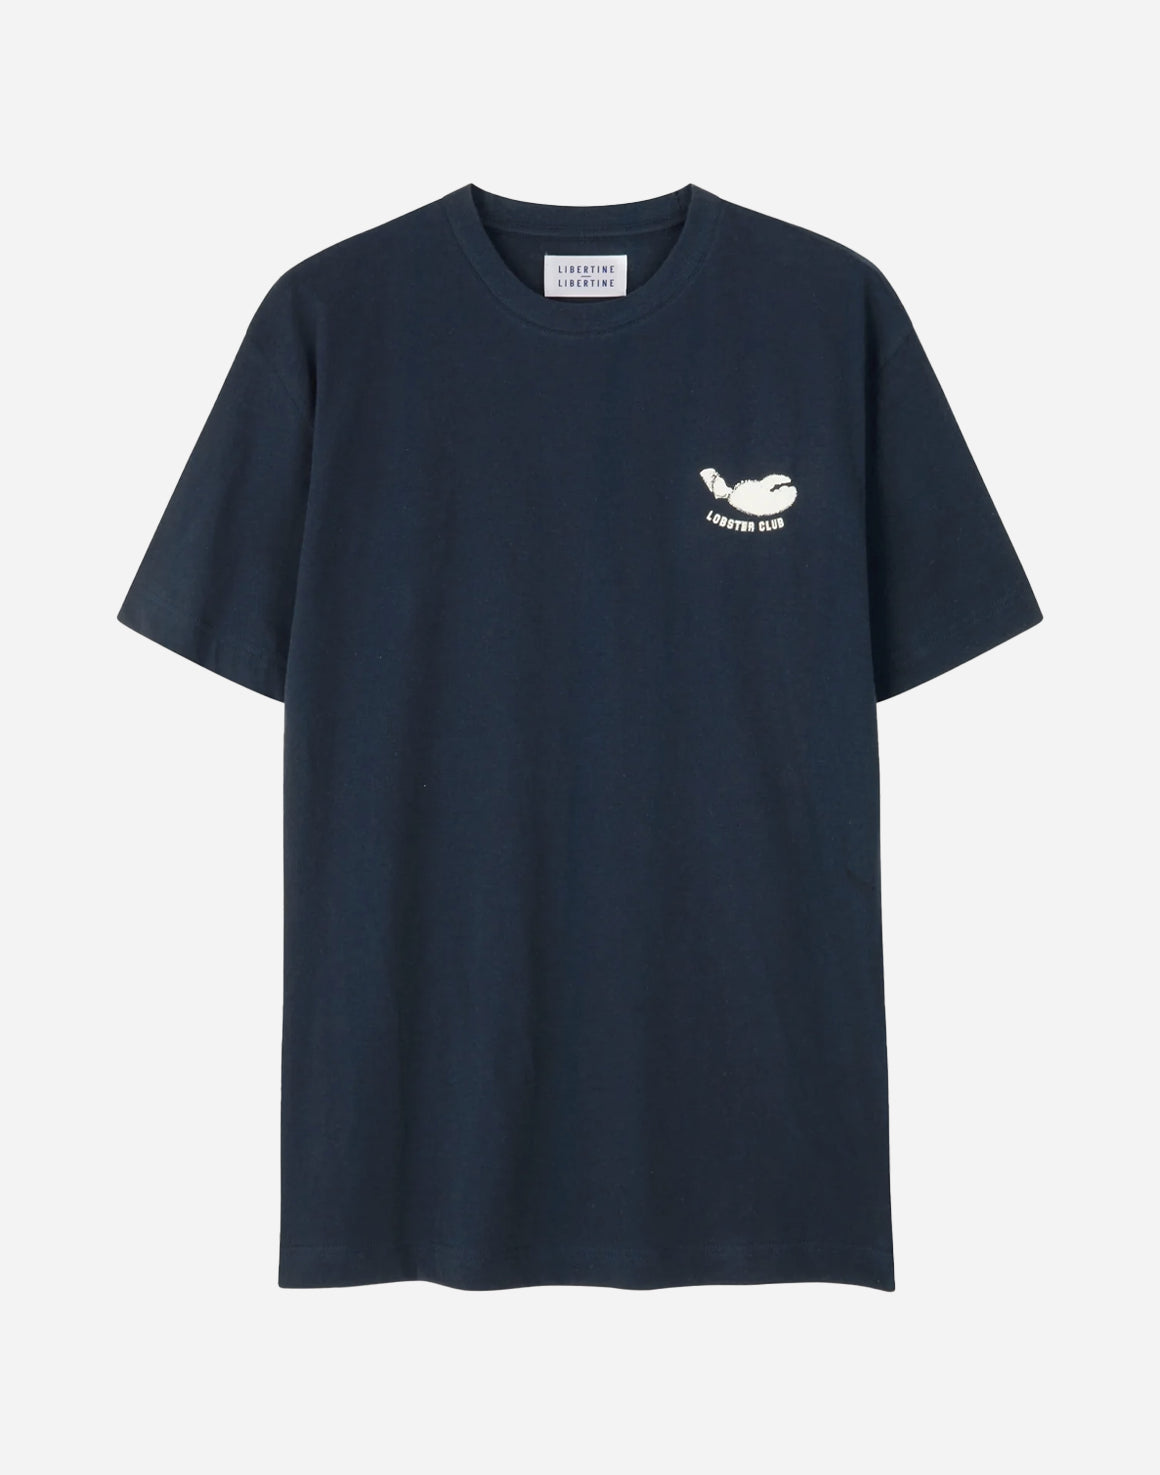 Beat LC T-shirt - Navy - Libertine-Libertine - Kul og Koks